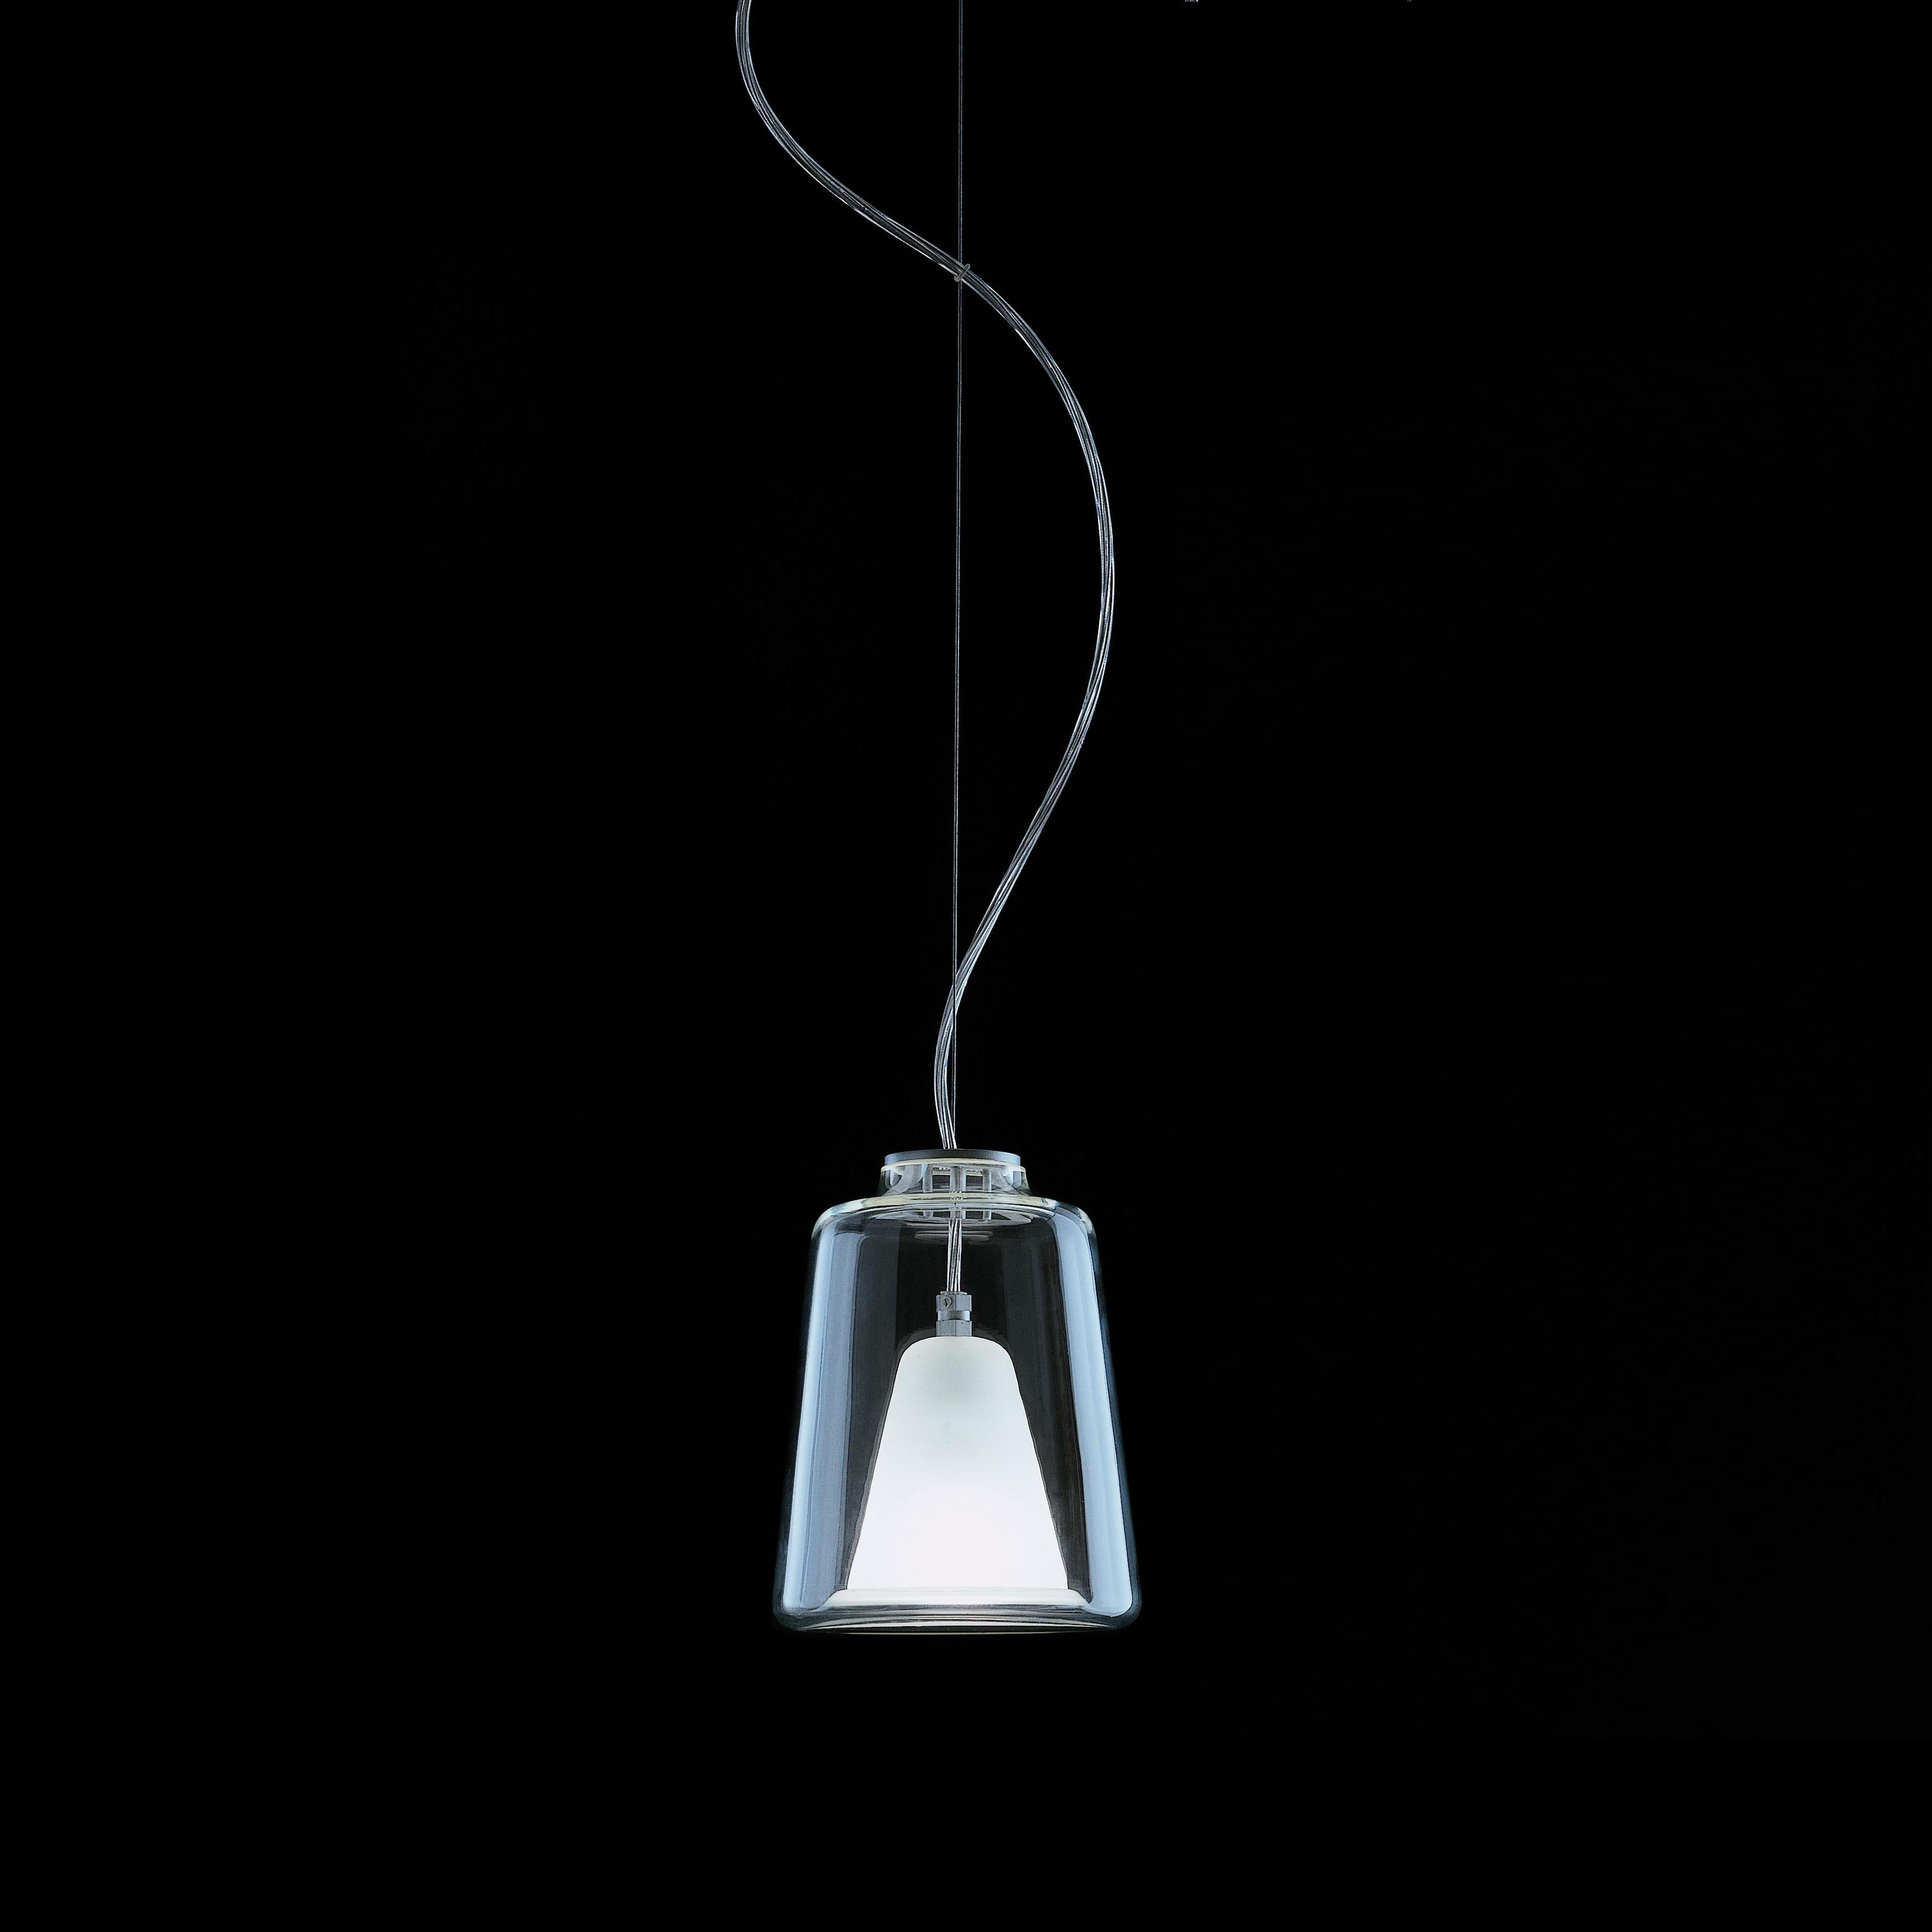 Hängeleuchte 'Lanterna', entworfen von Marta Laudani & Marco Romanelli in den Jahren 1998-2001. Hängeleuchte mit diffusem Licht. Transparente und sandgestrahlte Diffusoren aus Murano-Glas. Struktur aus glasiertem, eloxiertem Metall. Hergestellt von